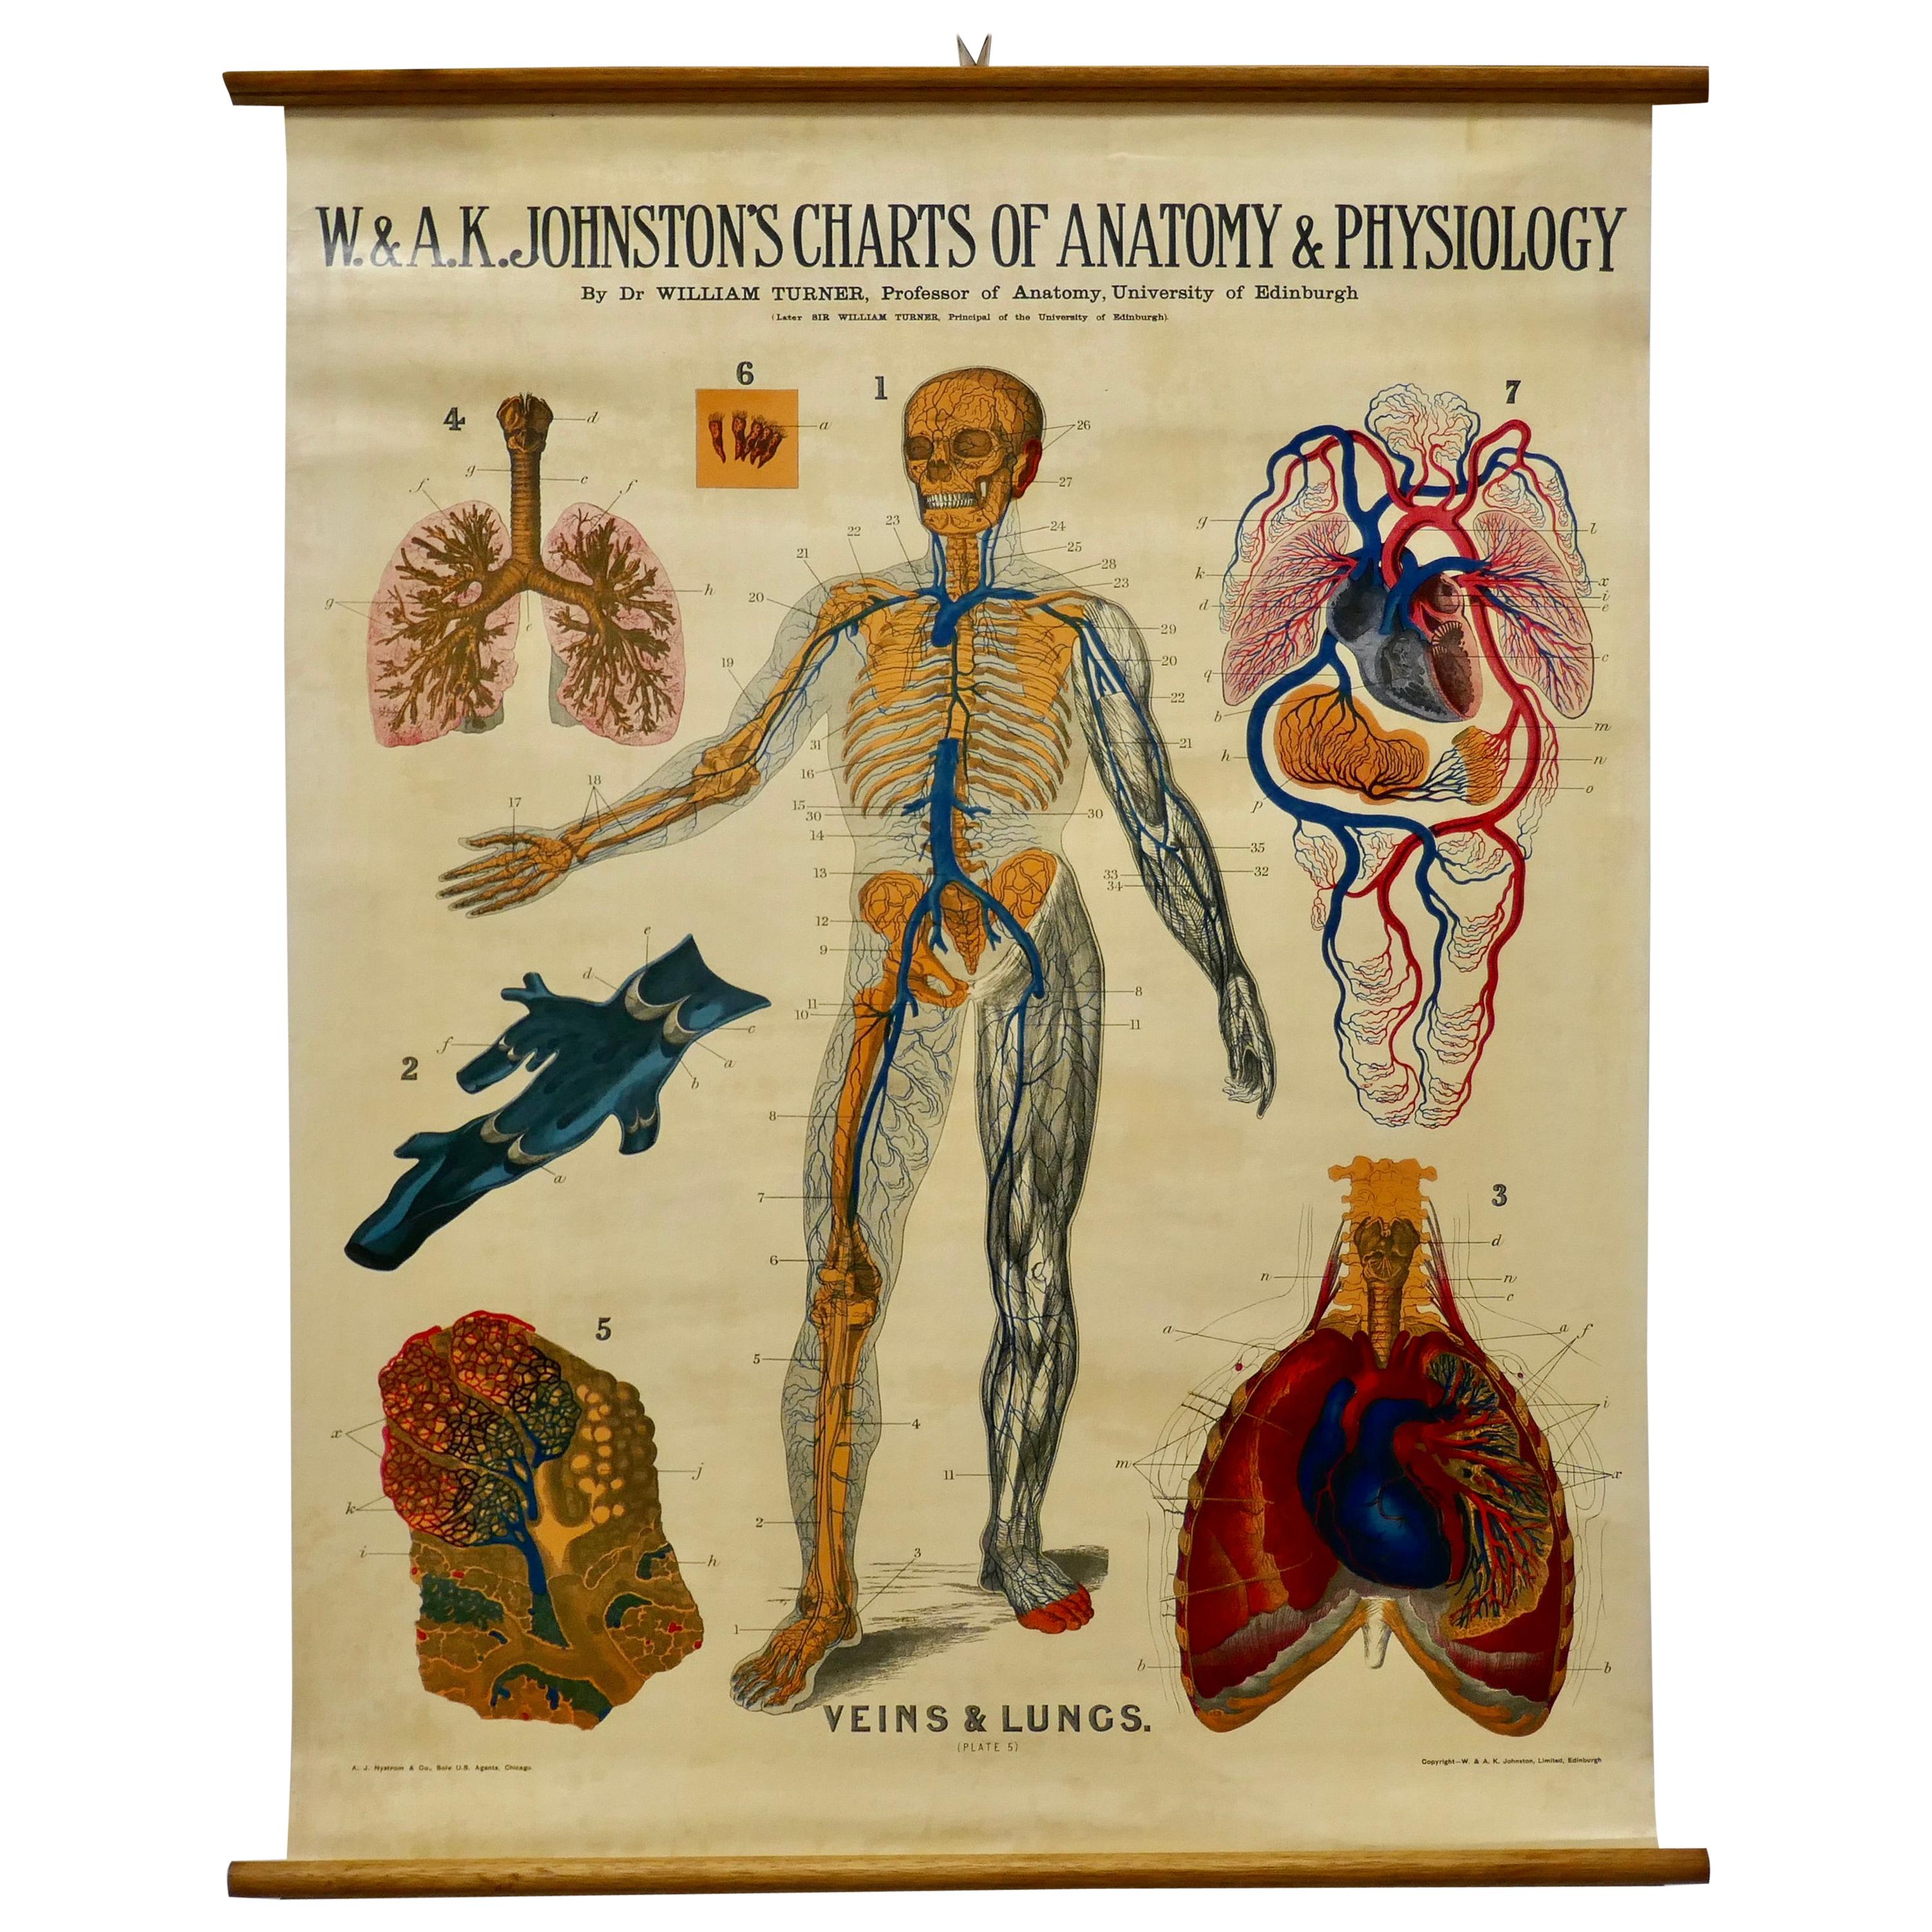 Grand tableau anatomique de l'université « Veins and Lungs » (veines et poumons) de Turner